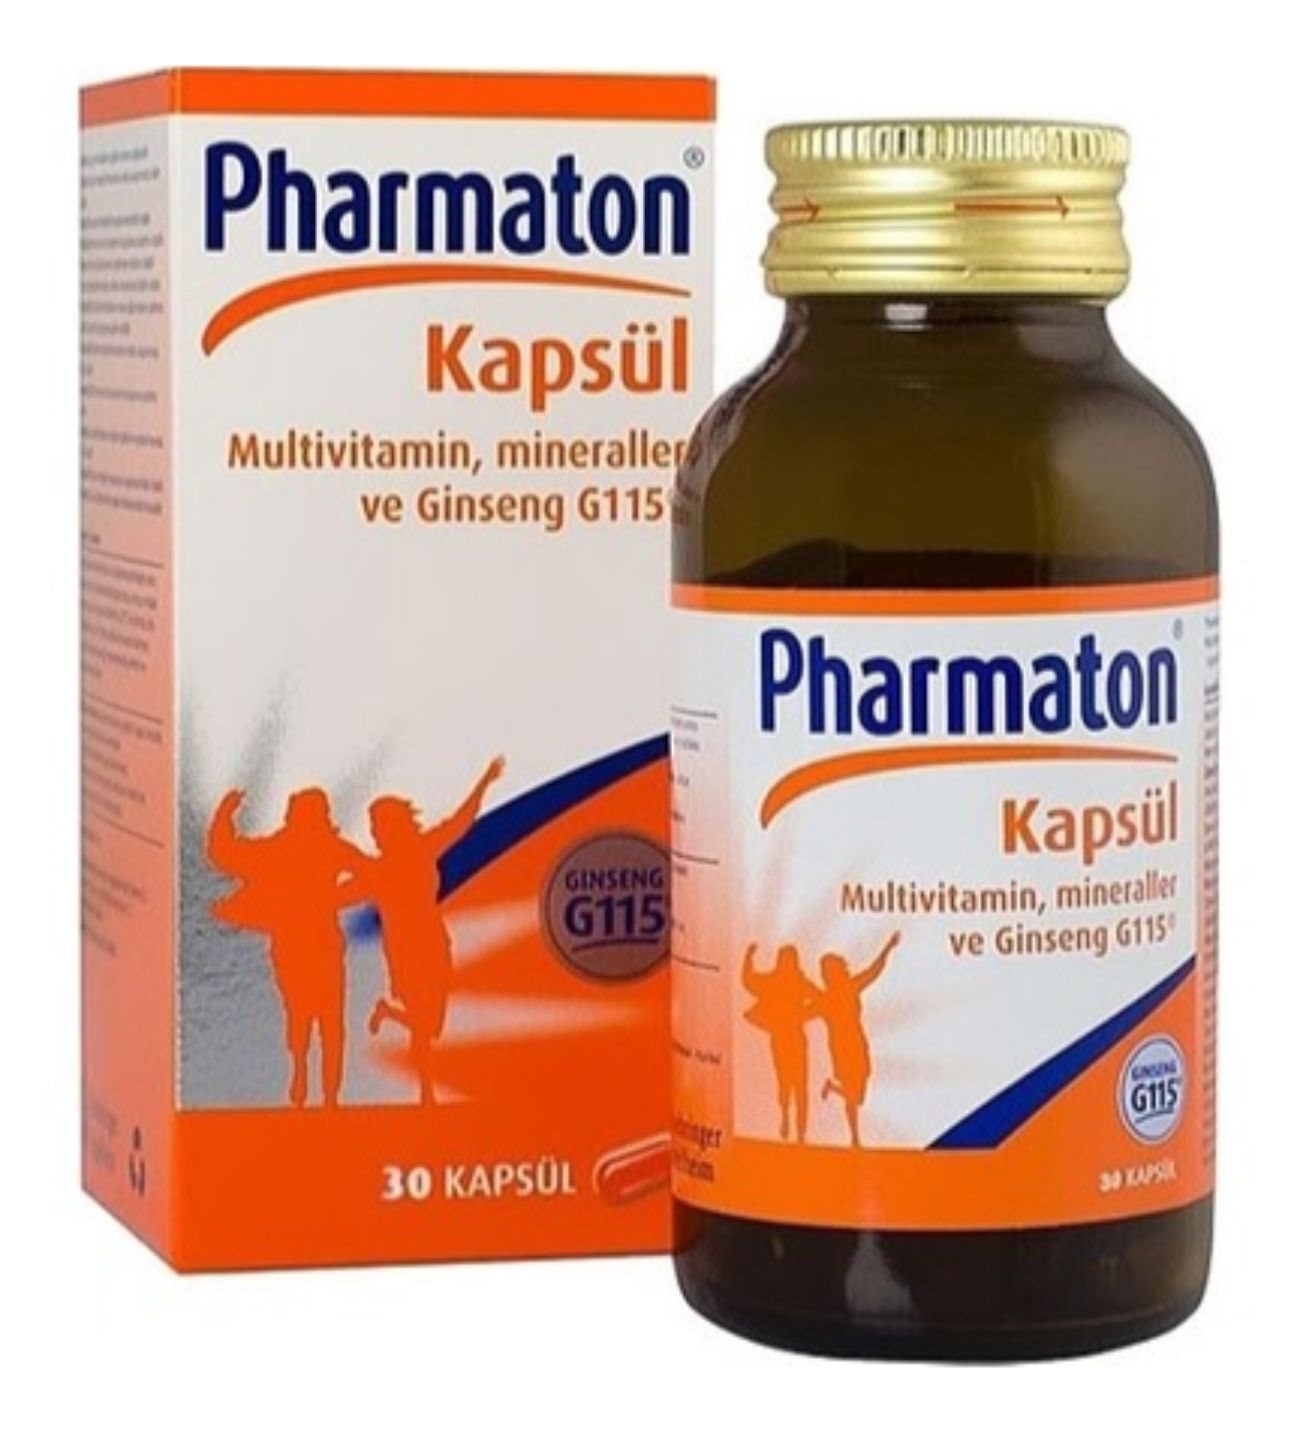 pharmaton-30-kapsul-multivitamin-kc7713265-1.jpg